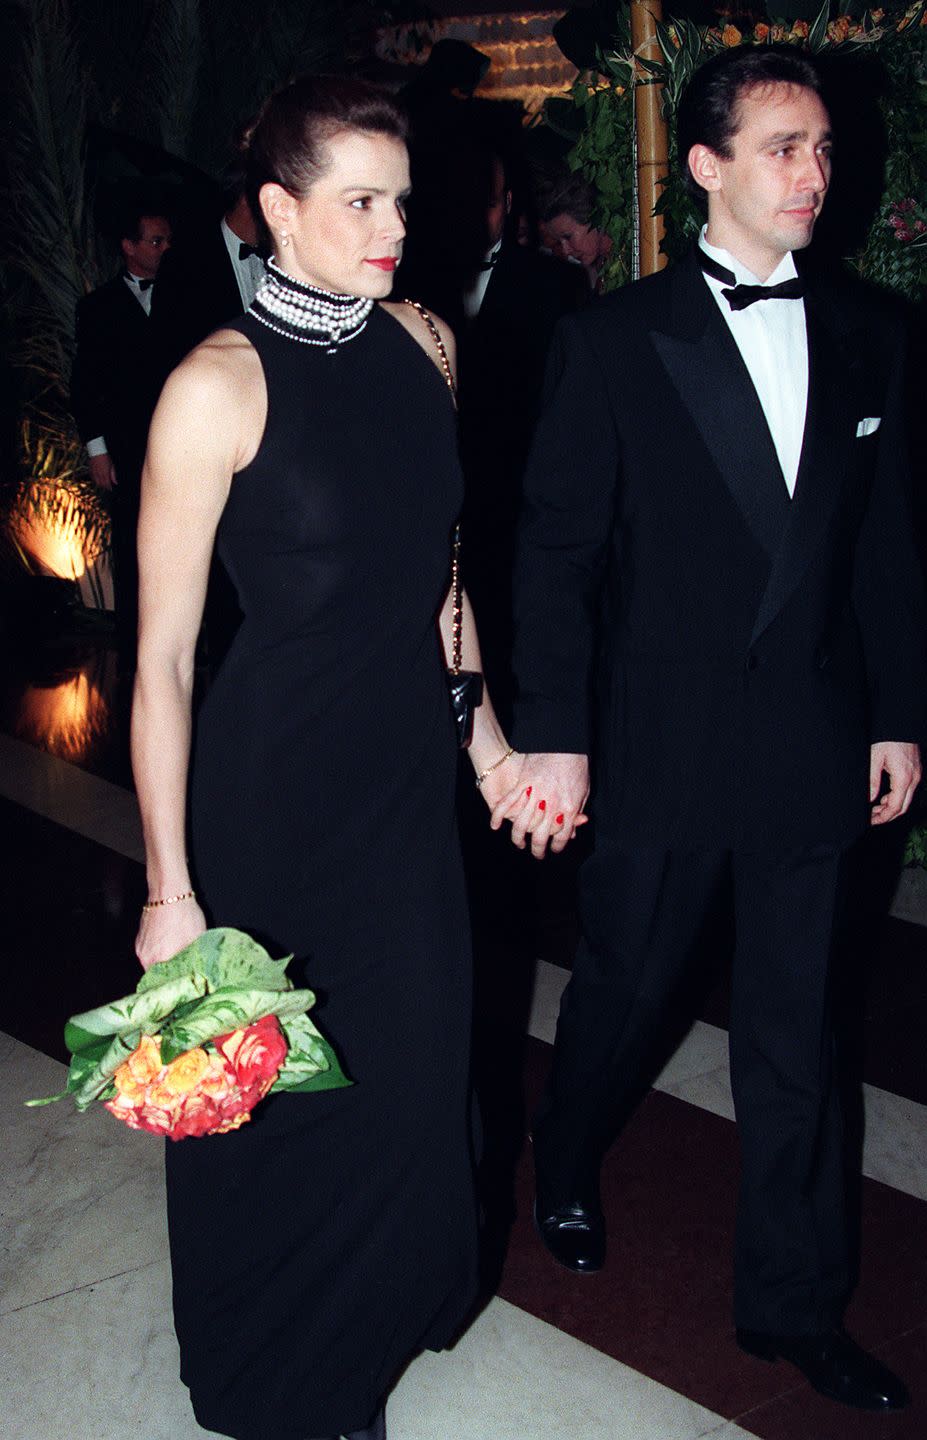 Princess Stéphanie of Monaco married her bodyguard.